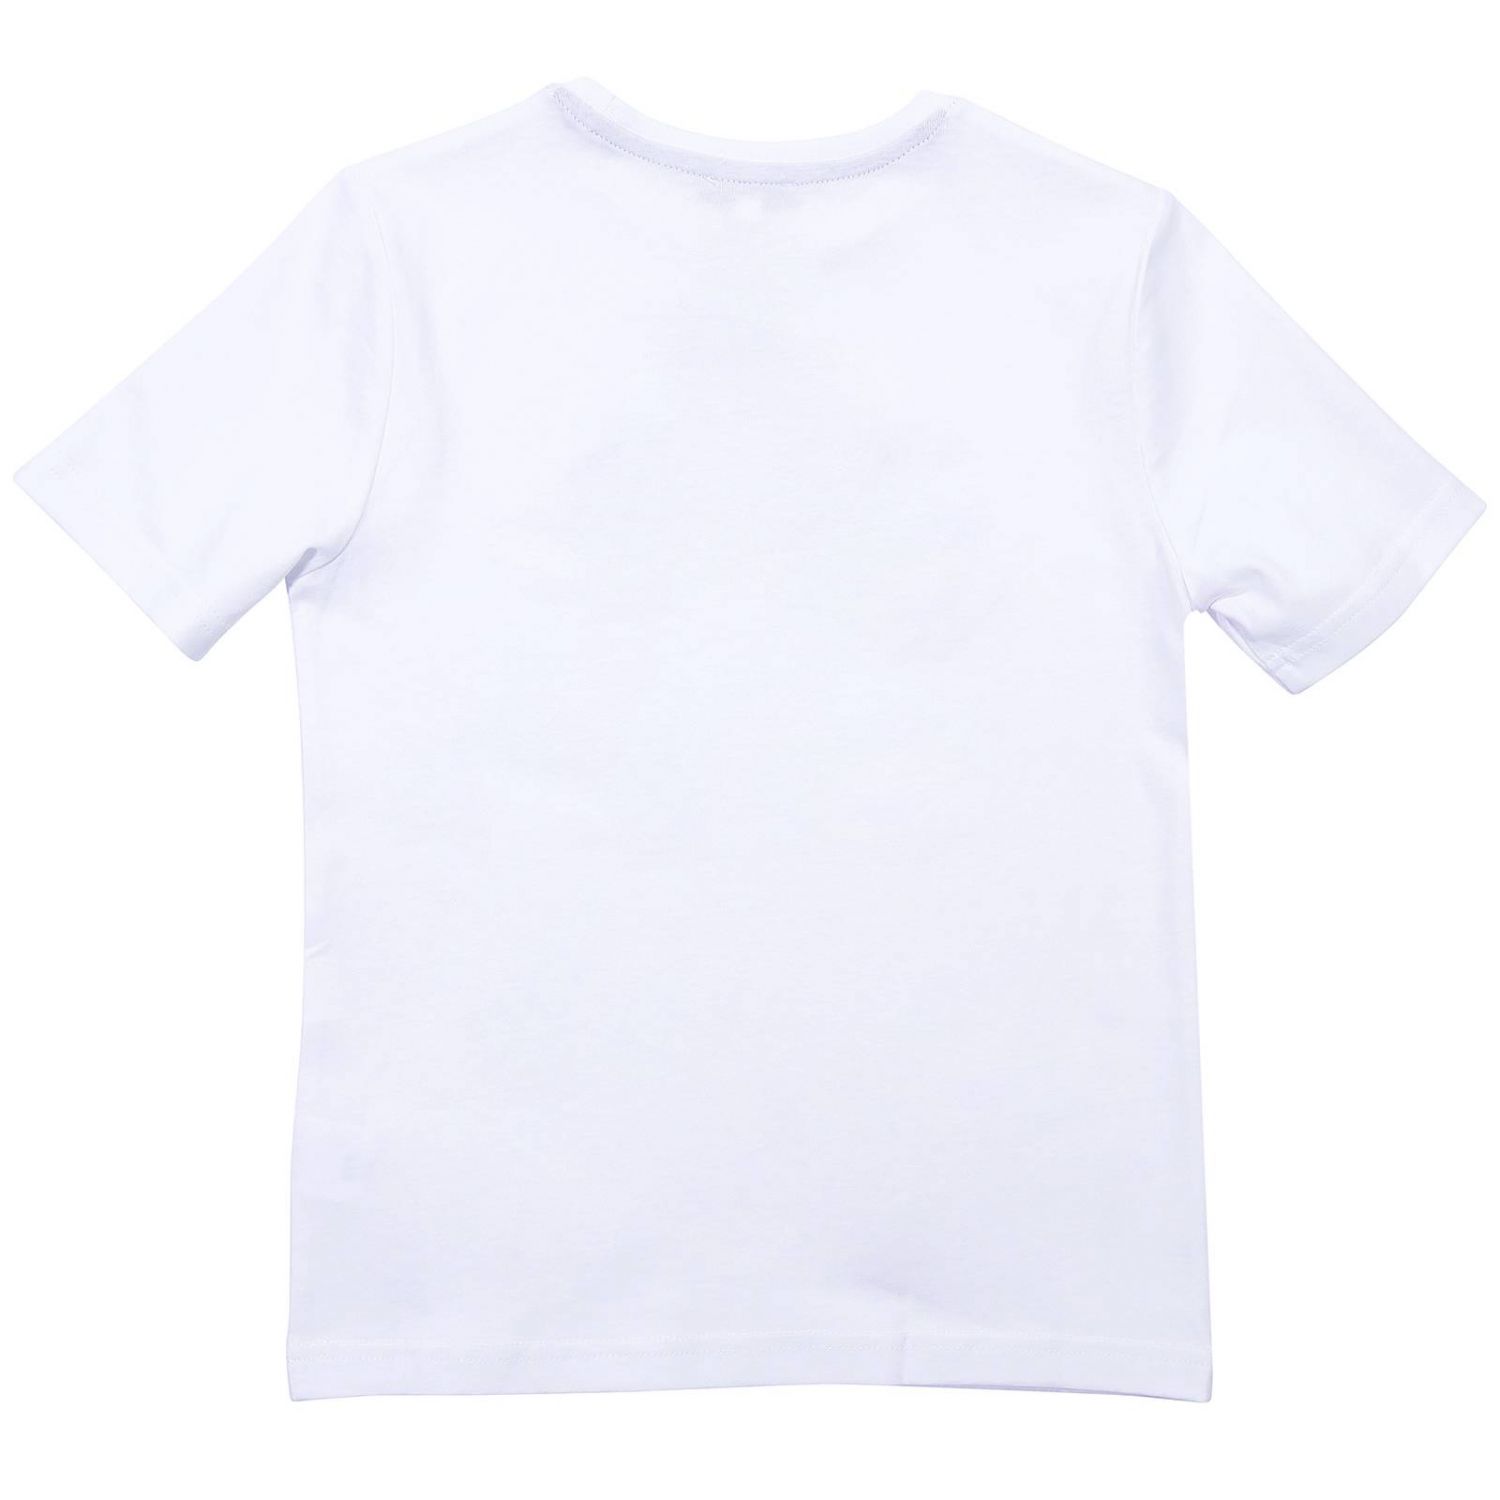 Hugo Boss Outlet: T-shirt kids - White | T-Shirt Hugo Boss J25D85 ...